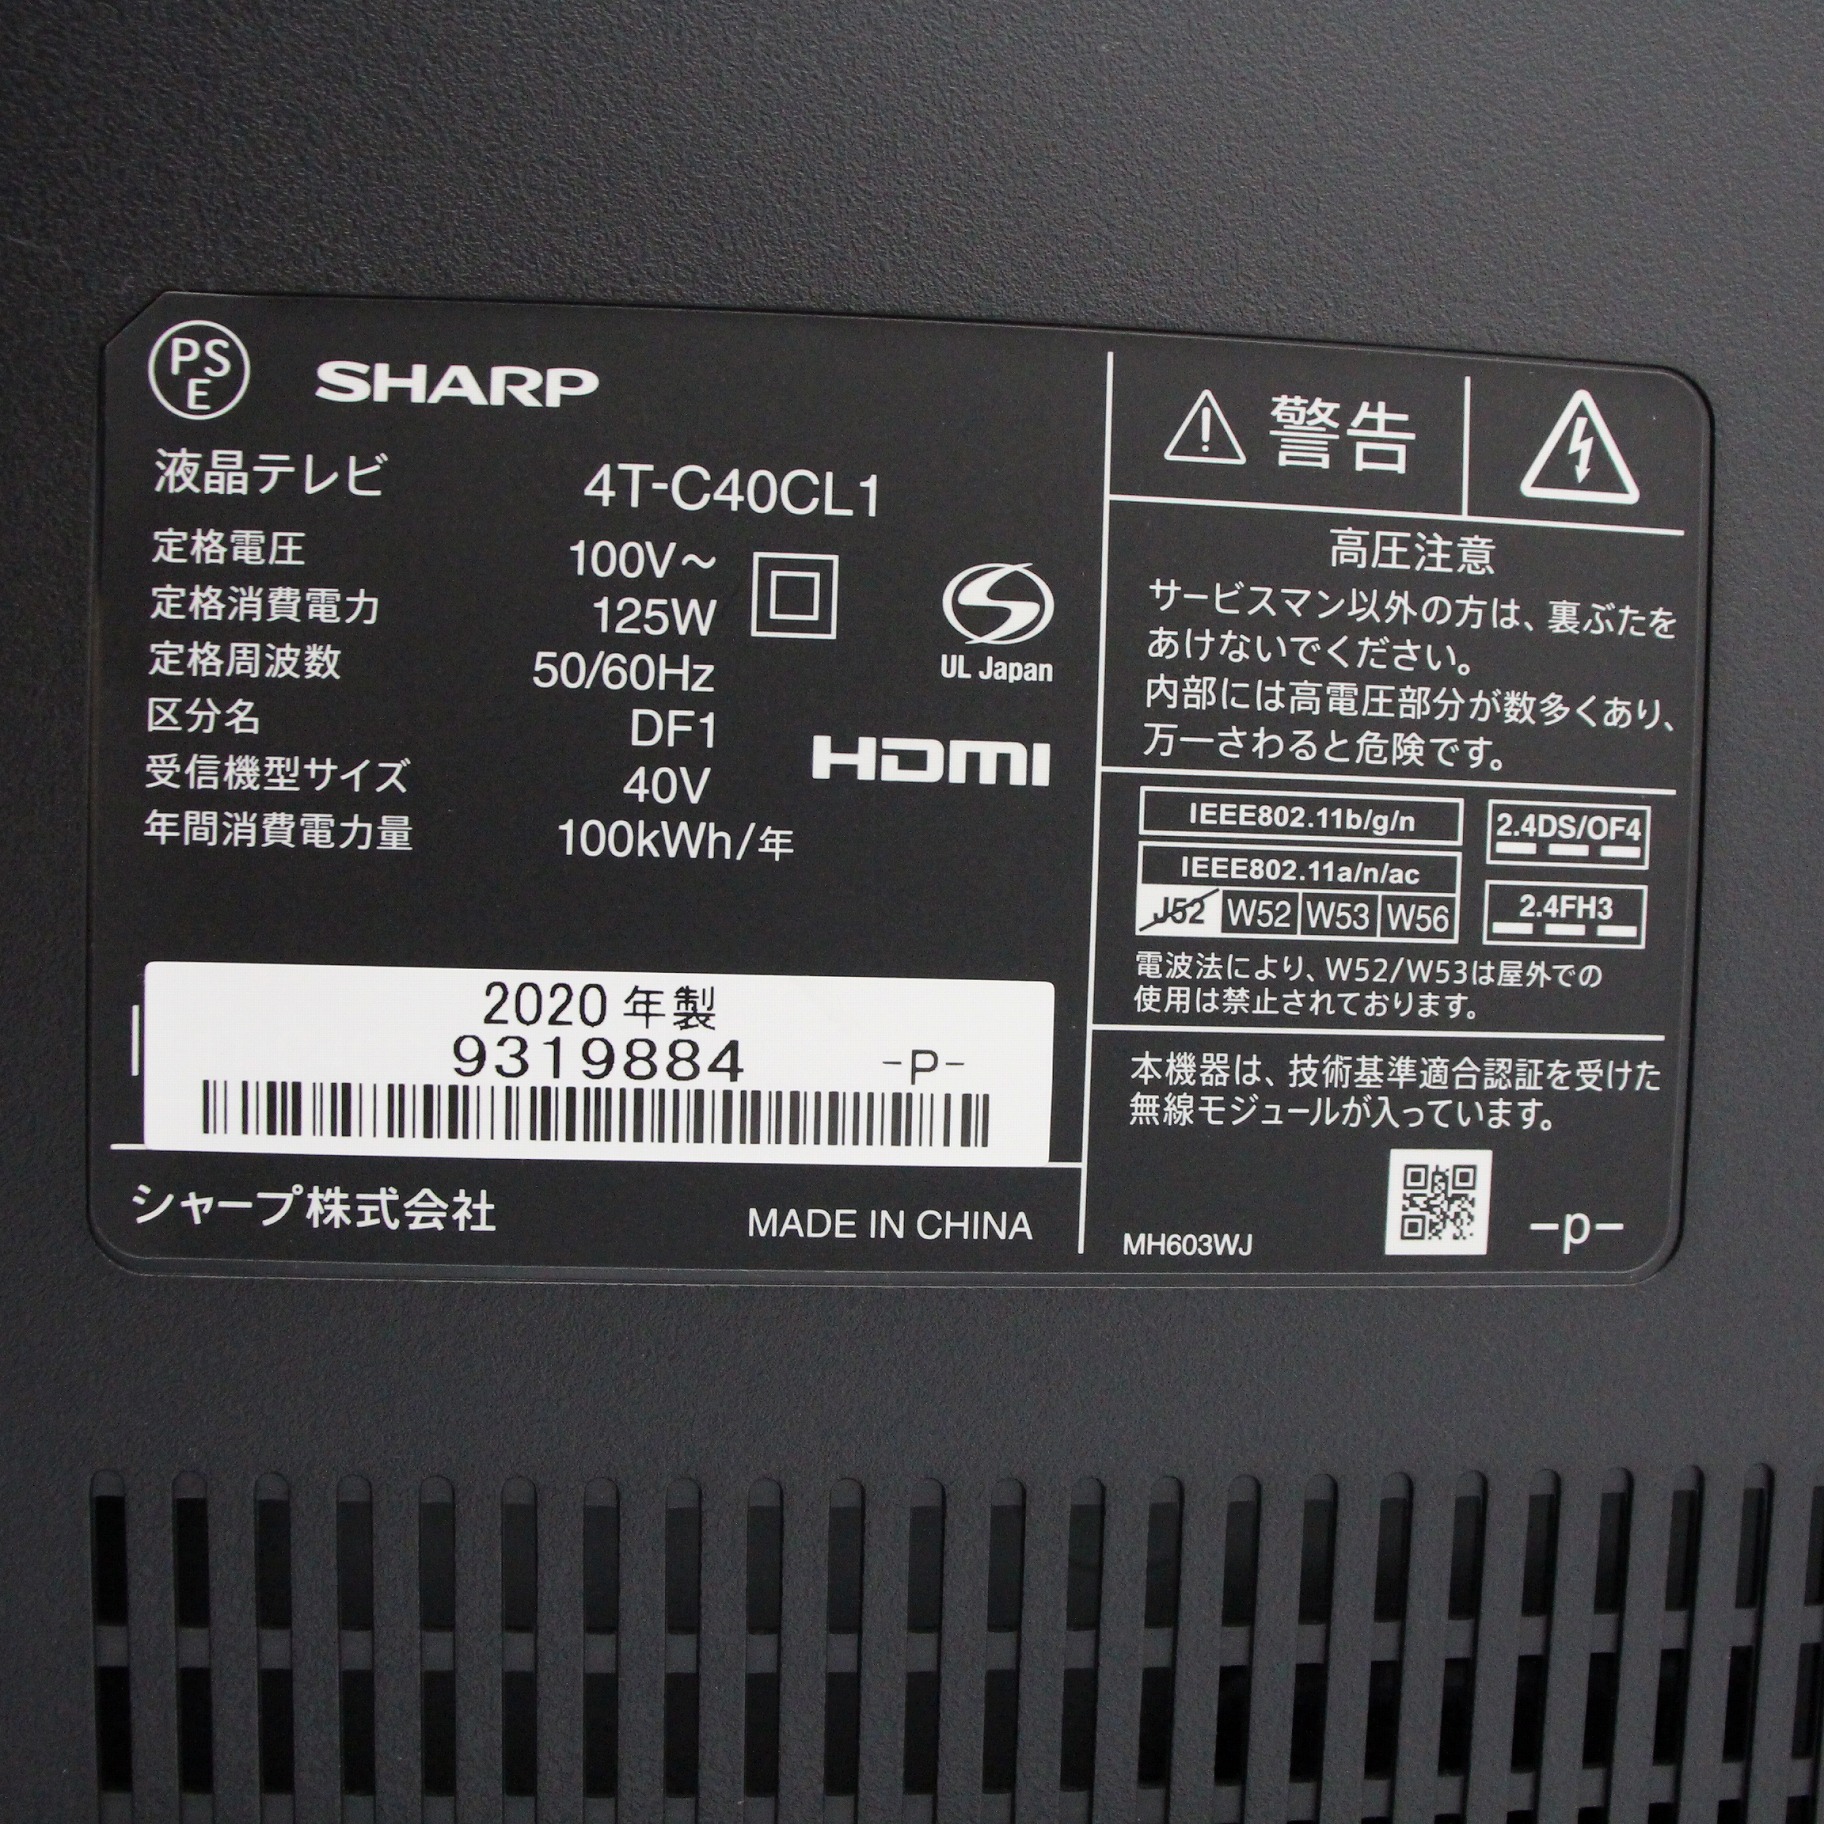 SHARP AQUOS 4t-c40cl1 4K 液晶テレビ - テレビ